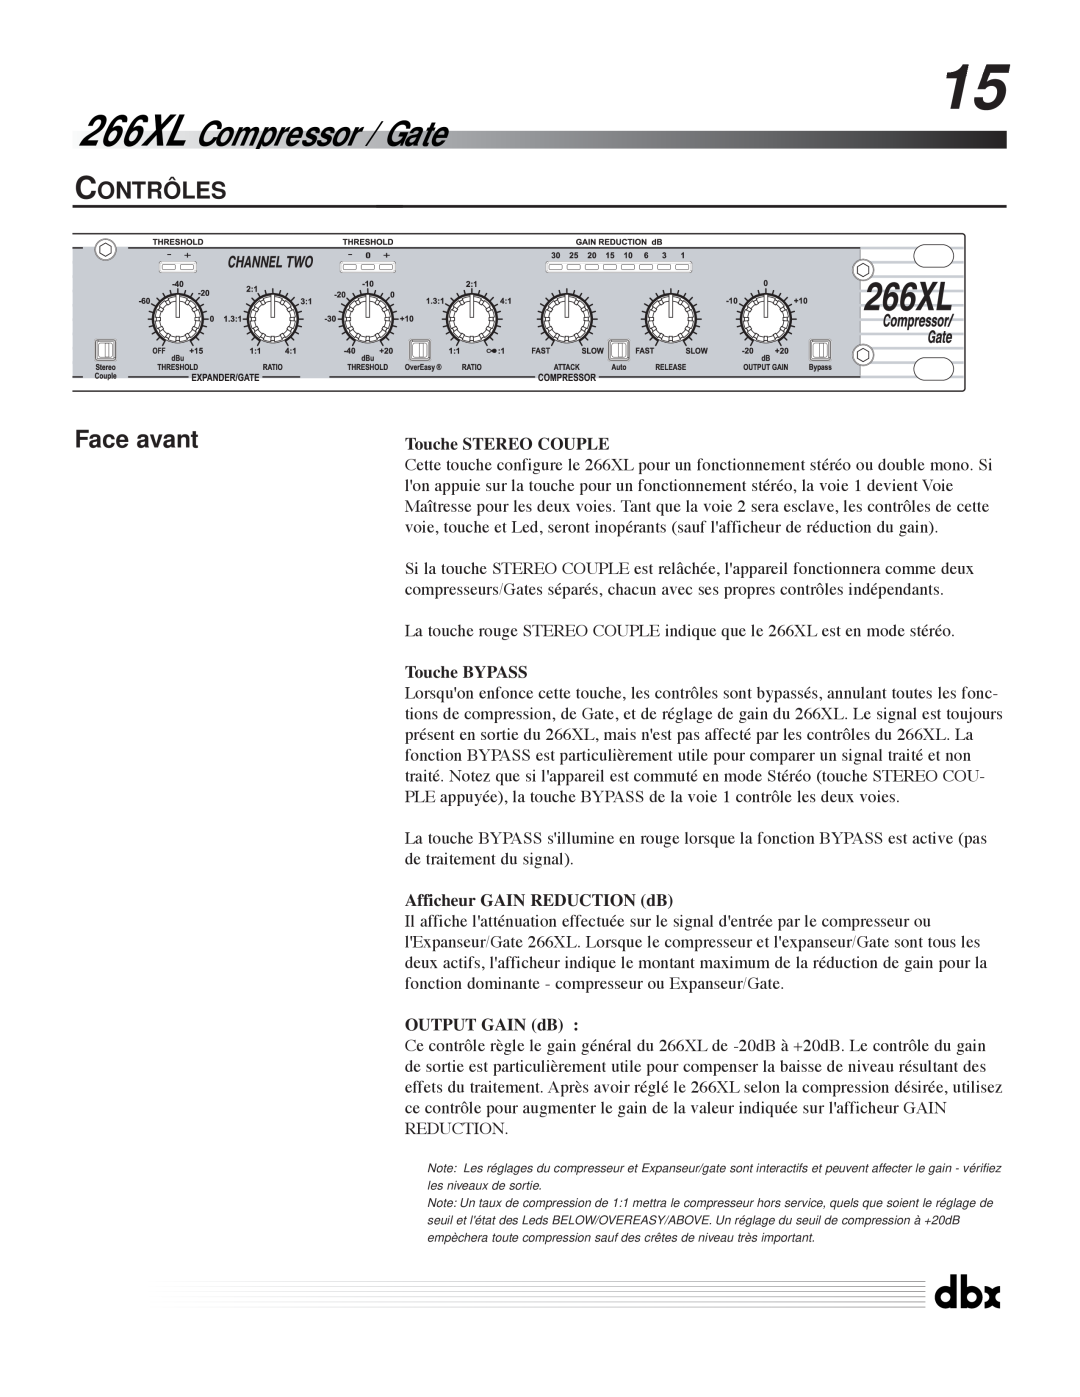 dbx Pro Contrôles, Face avant, 266XL Compressor / Gate, Touche STEREO COUPLE, Touche BYPASS, OUTPUT GAIN dB 